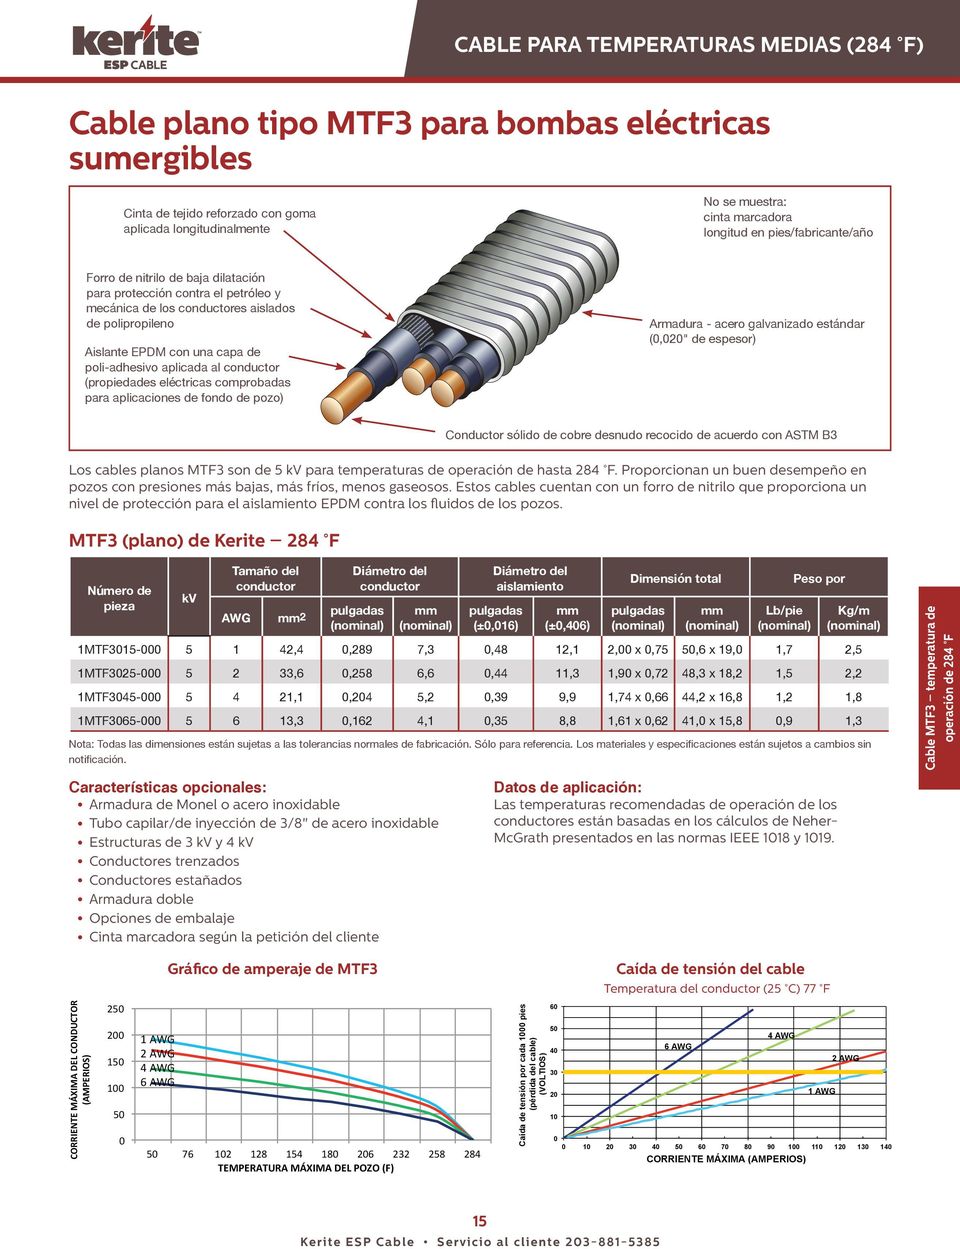 (propiedades eléctricas comprobadas para aplicaciones de fondo de pozo) Armadura - acero galvanizado estándar (,2" de espesor) Los cables planos MTF3 son de 5 kv para temperaturas de operación de